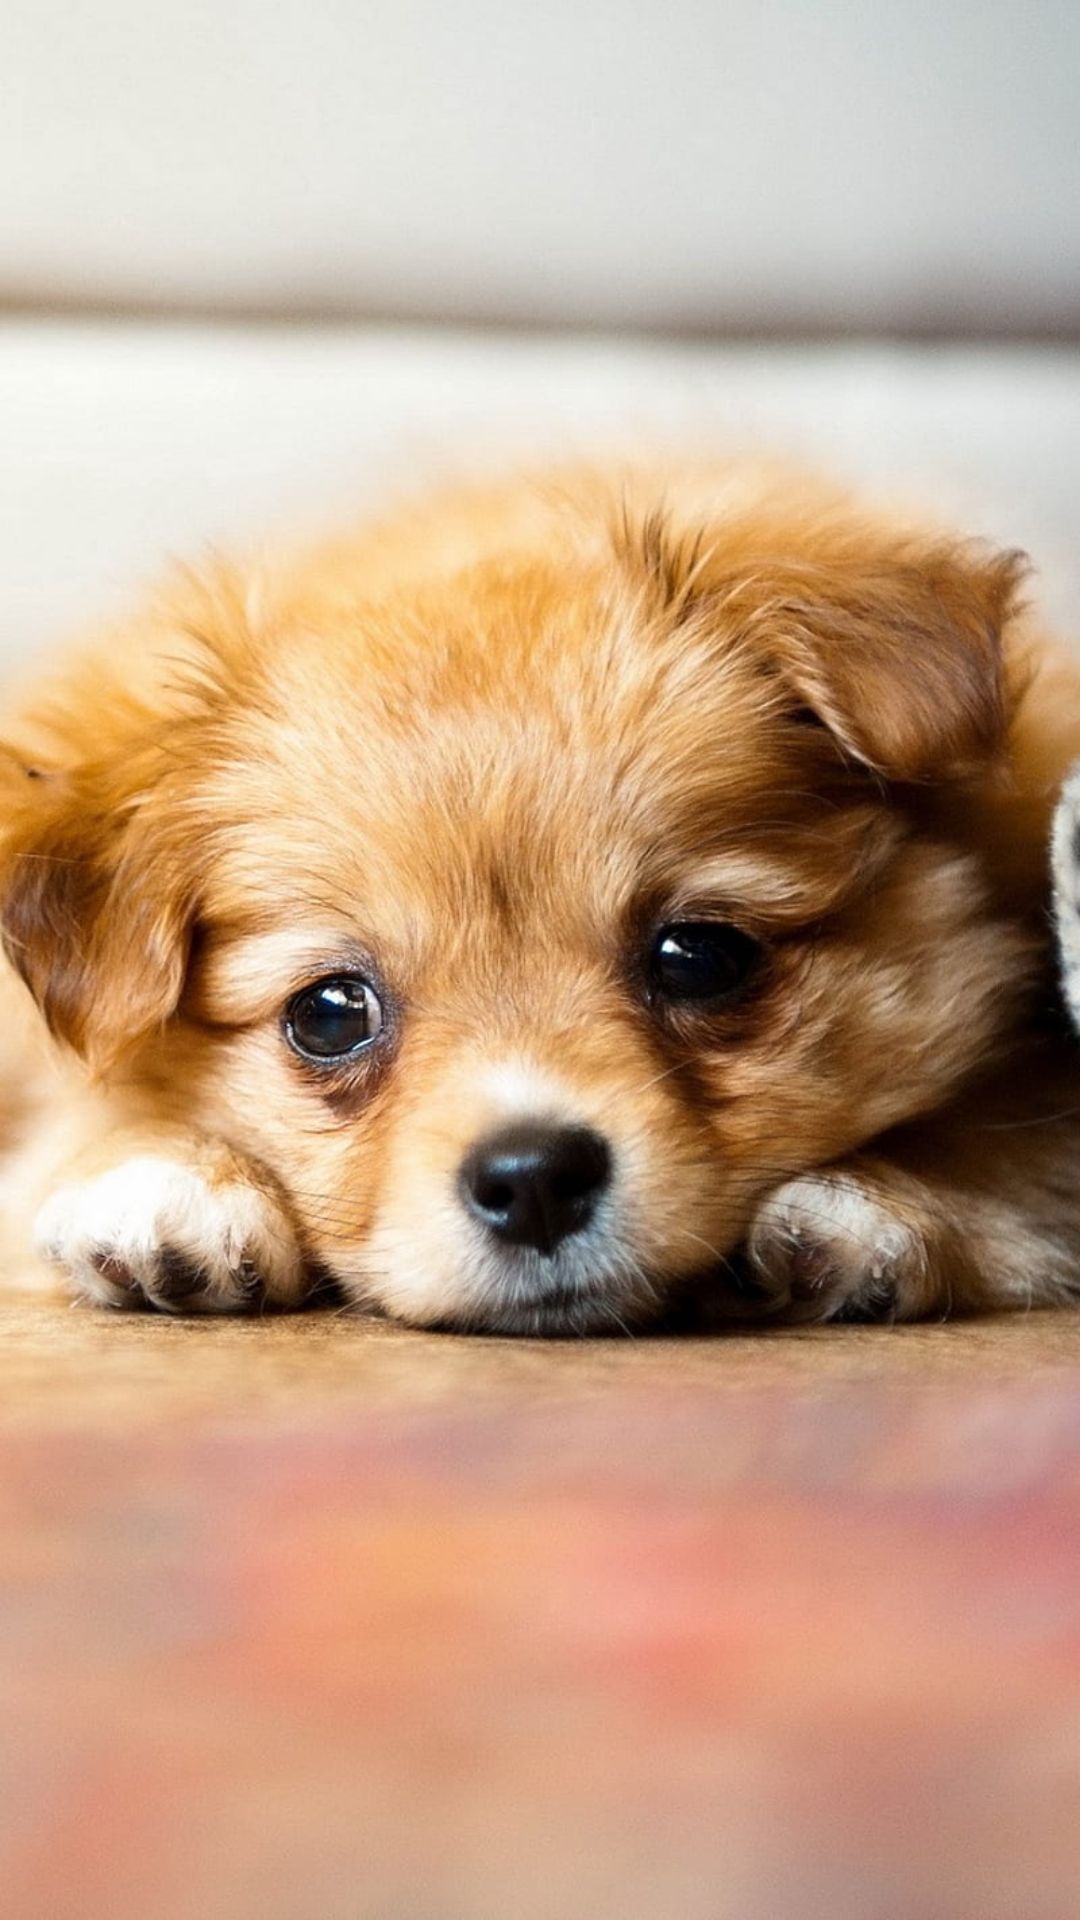 Ảnh chó buồn đáng yêu: Bức ảnh này khiến bạn không thể nhịn nổi sự đáng yêu của chú chó buồn. Nhấn vào đây để chiêm ngưỡng bức ảnh đầy cảm xúc và đáng yêu này. Bạn sẽ không thất vọng!